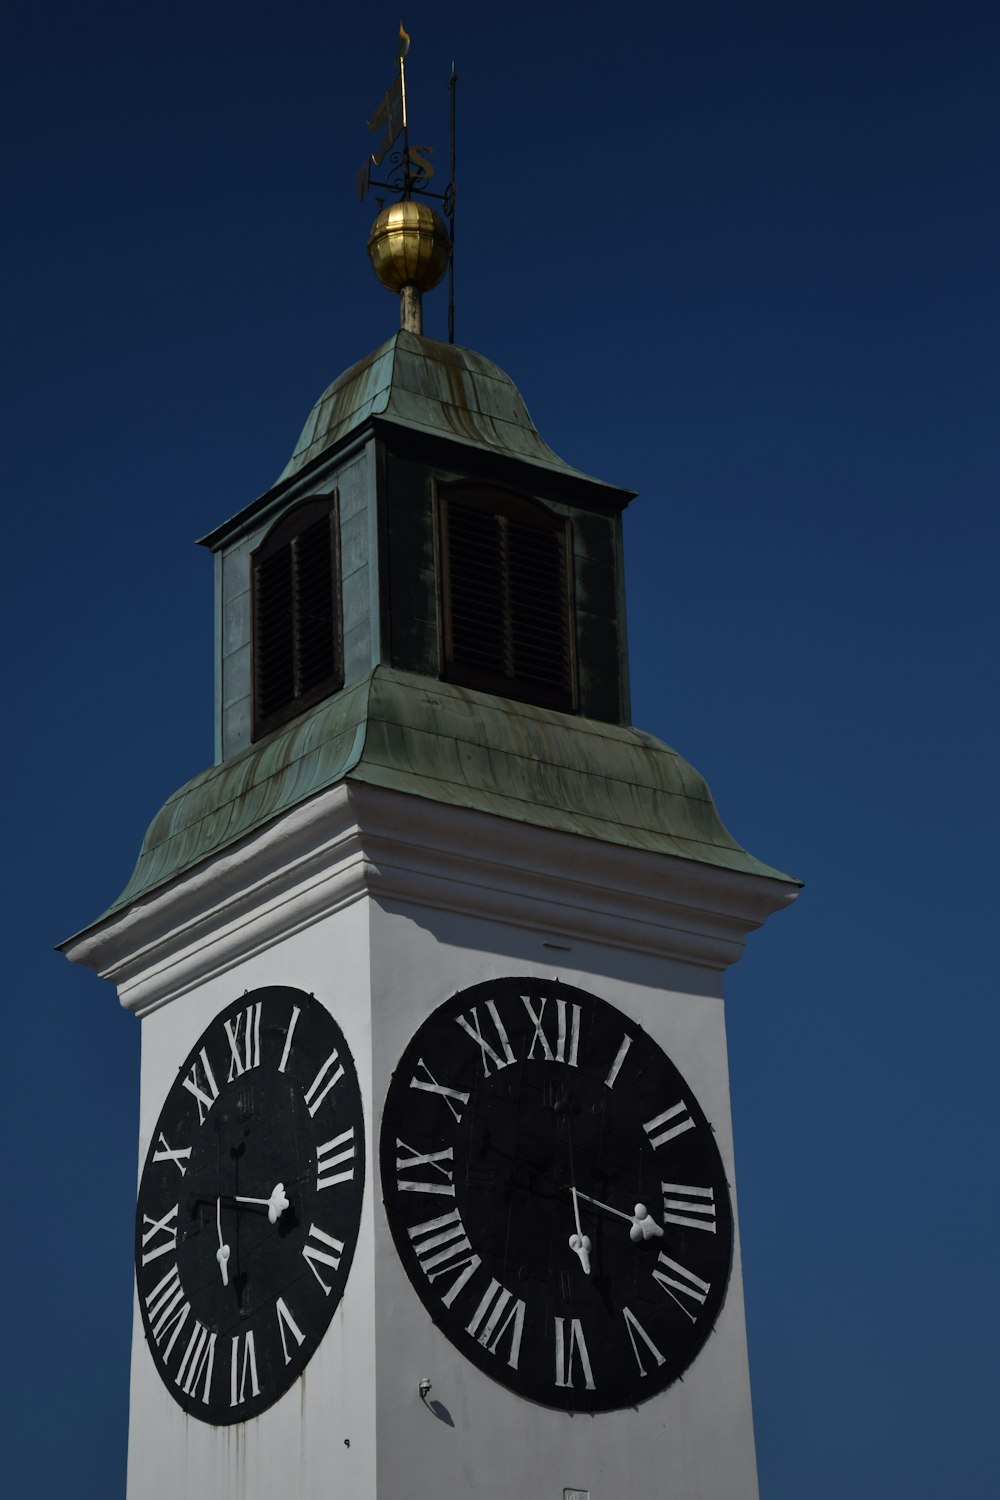 Torre de reloj blanca y negra bajo el cielo azul durante el día